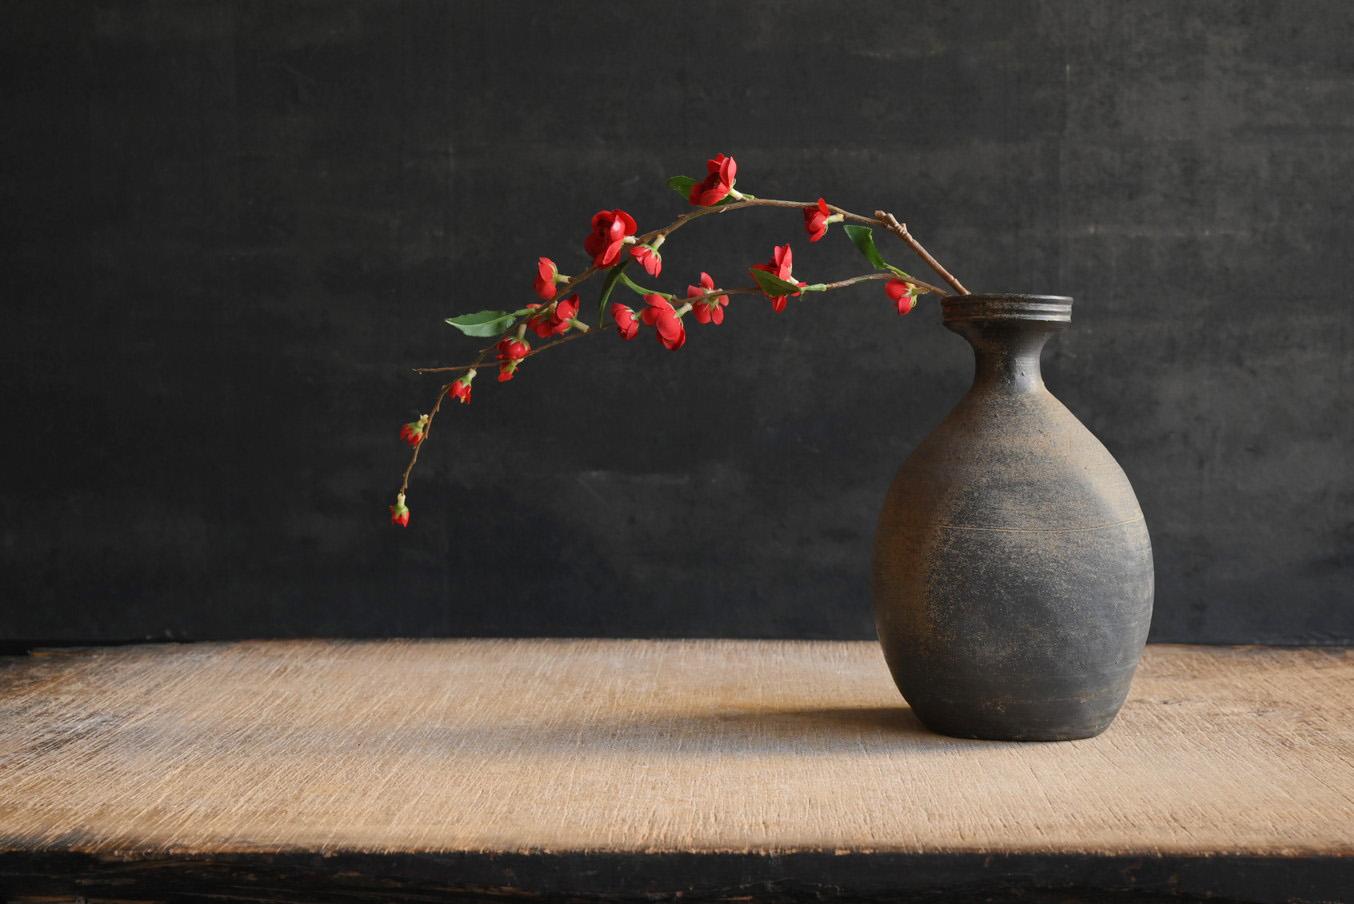 Es handelt sich um hartes Steingut aus der Goryeo-Zeit in Korea.
Diese Vase wurde um das 10. Jahrhundert herum hergestellt.

Die Wände der Vase sind dünn, aber da sie bei hohen Temperaturen gebrannt werden, sind sie hart und geben ein metallisches